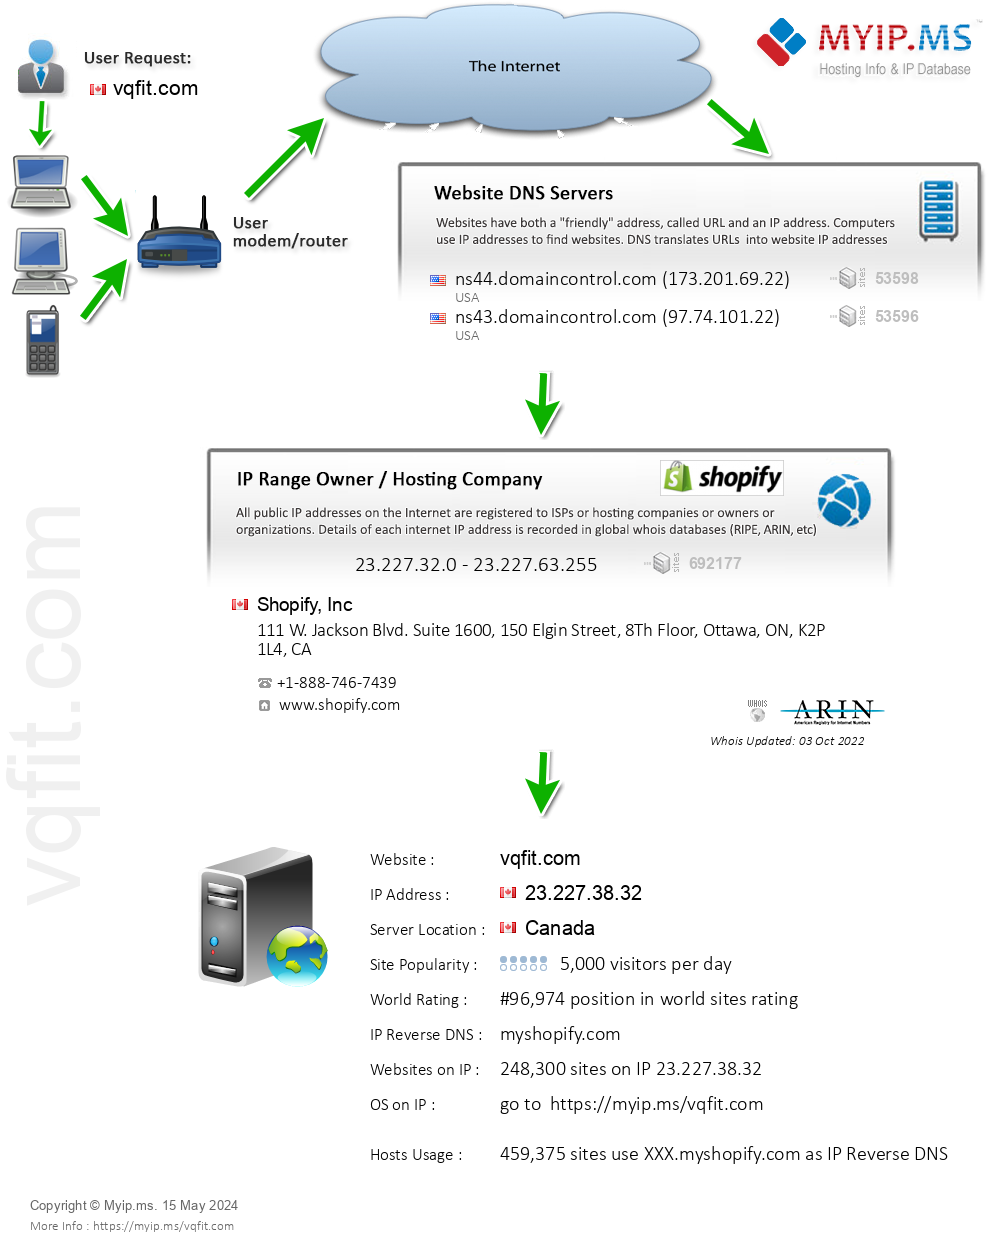 Vqfit.com - Website Hosting Visual IP Diagram